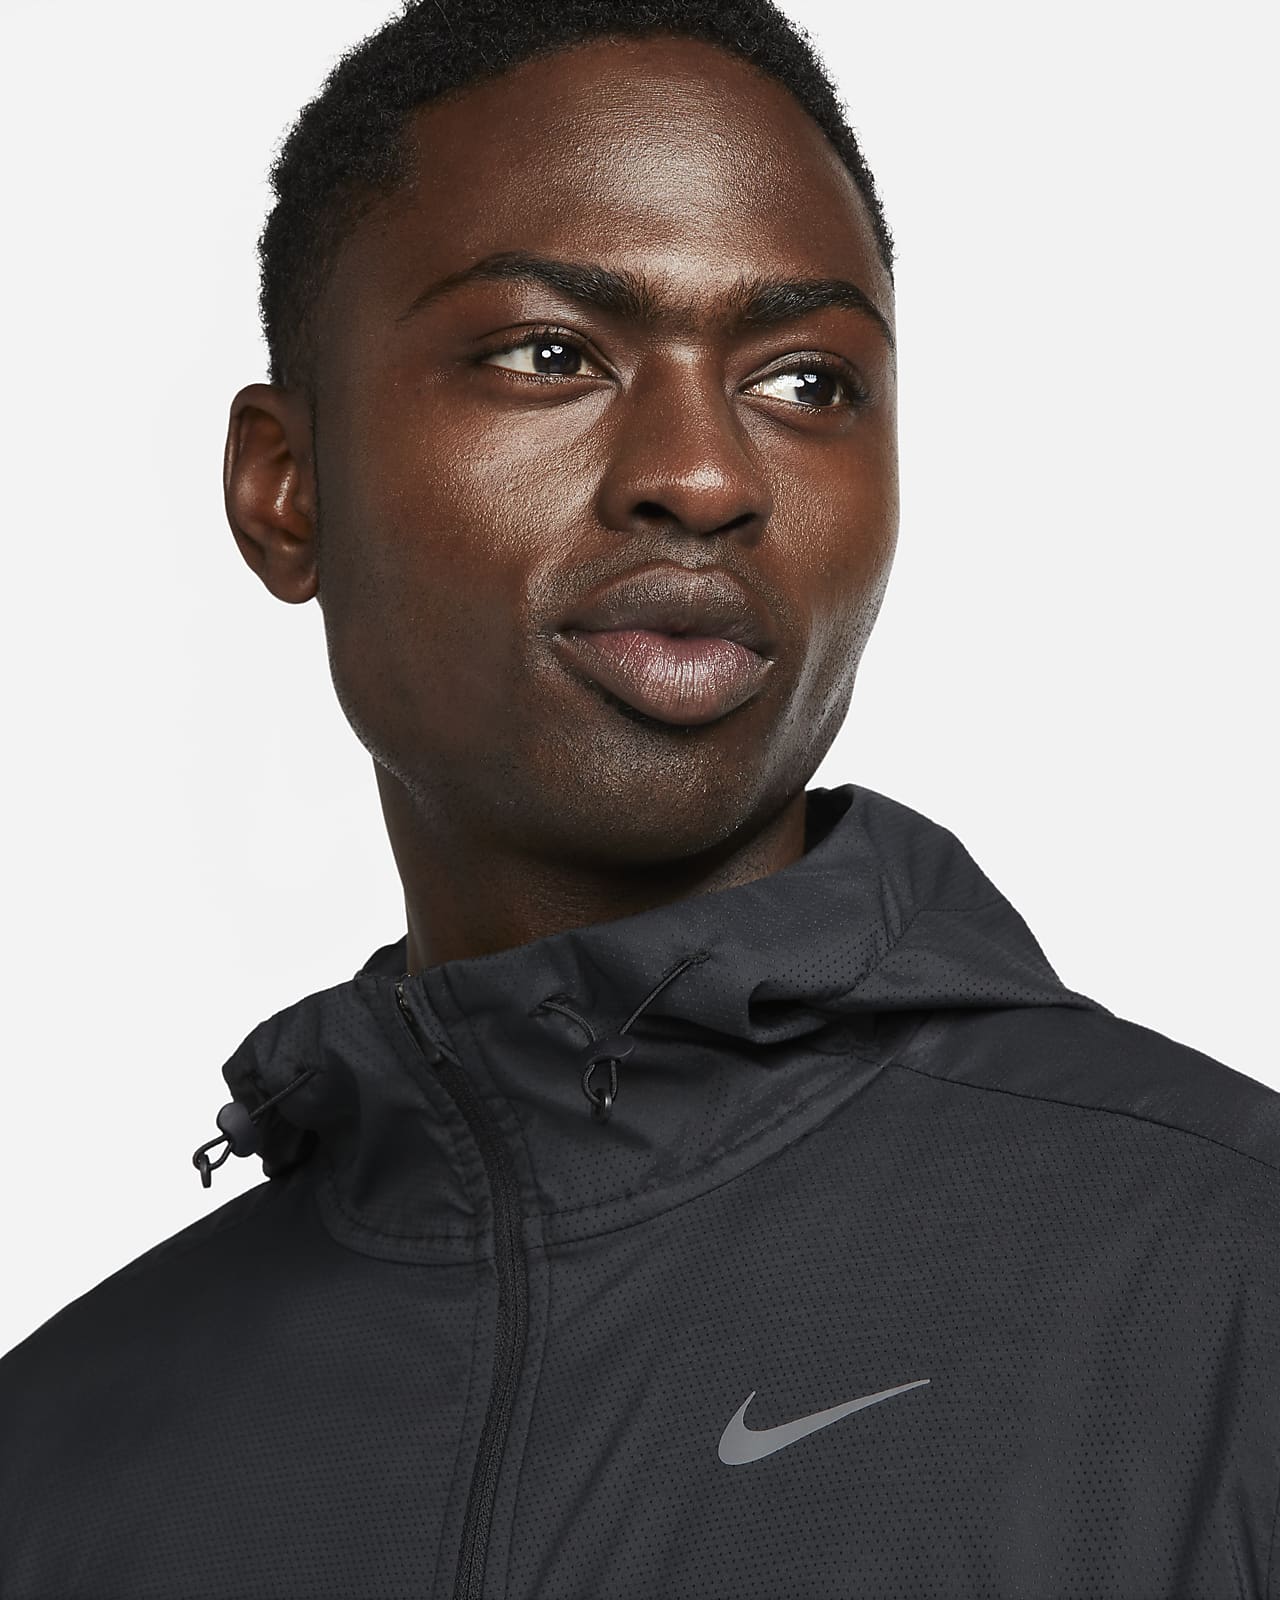 Veste de running Nike Windrunner pour Homme